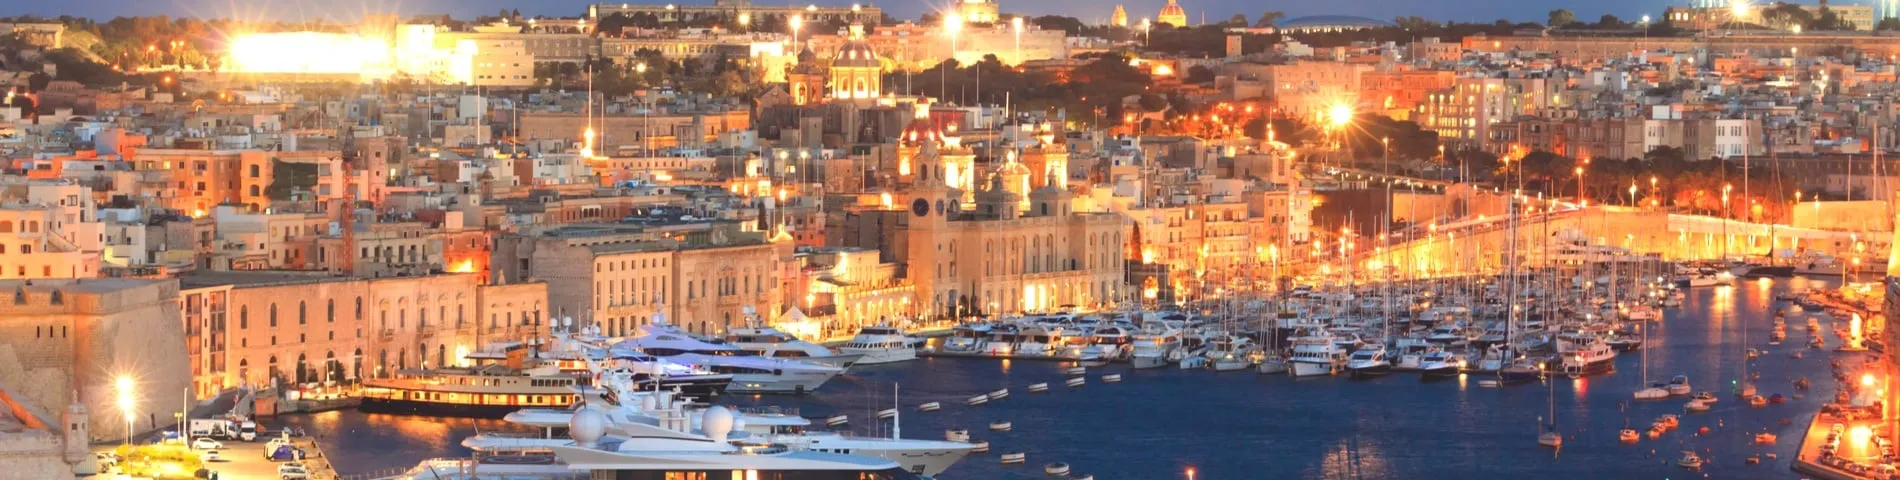 Valletta - Inne egzaminy